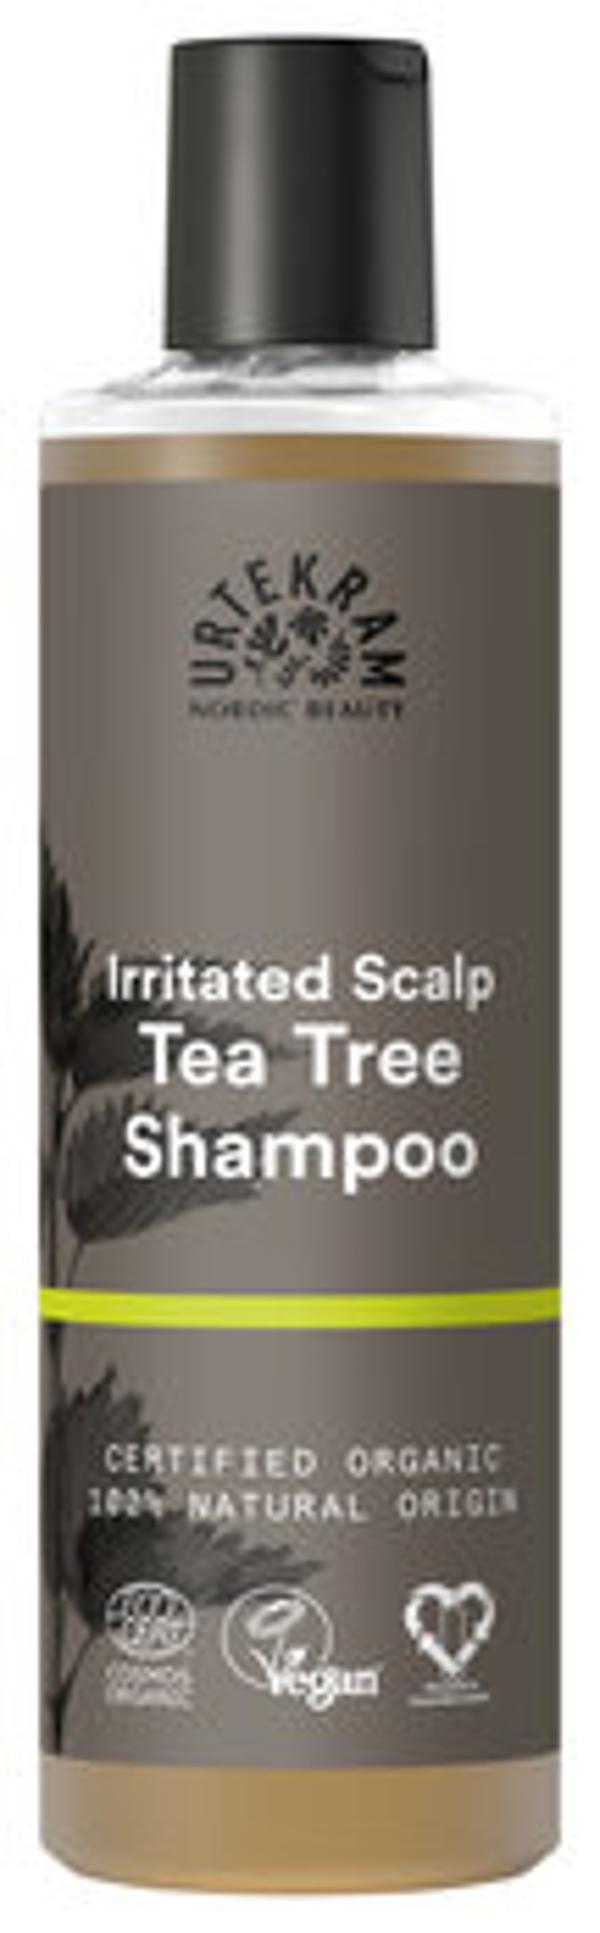 Produktfoto zu Teebaum Shampoo für gereizte Kopfhaut